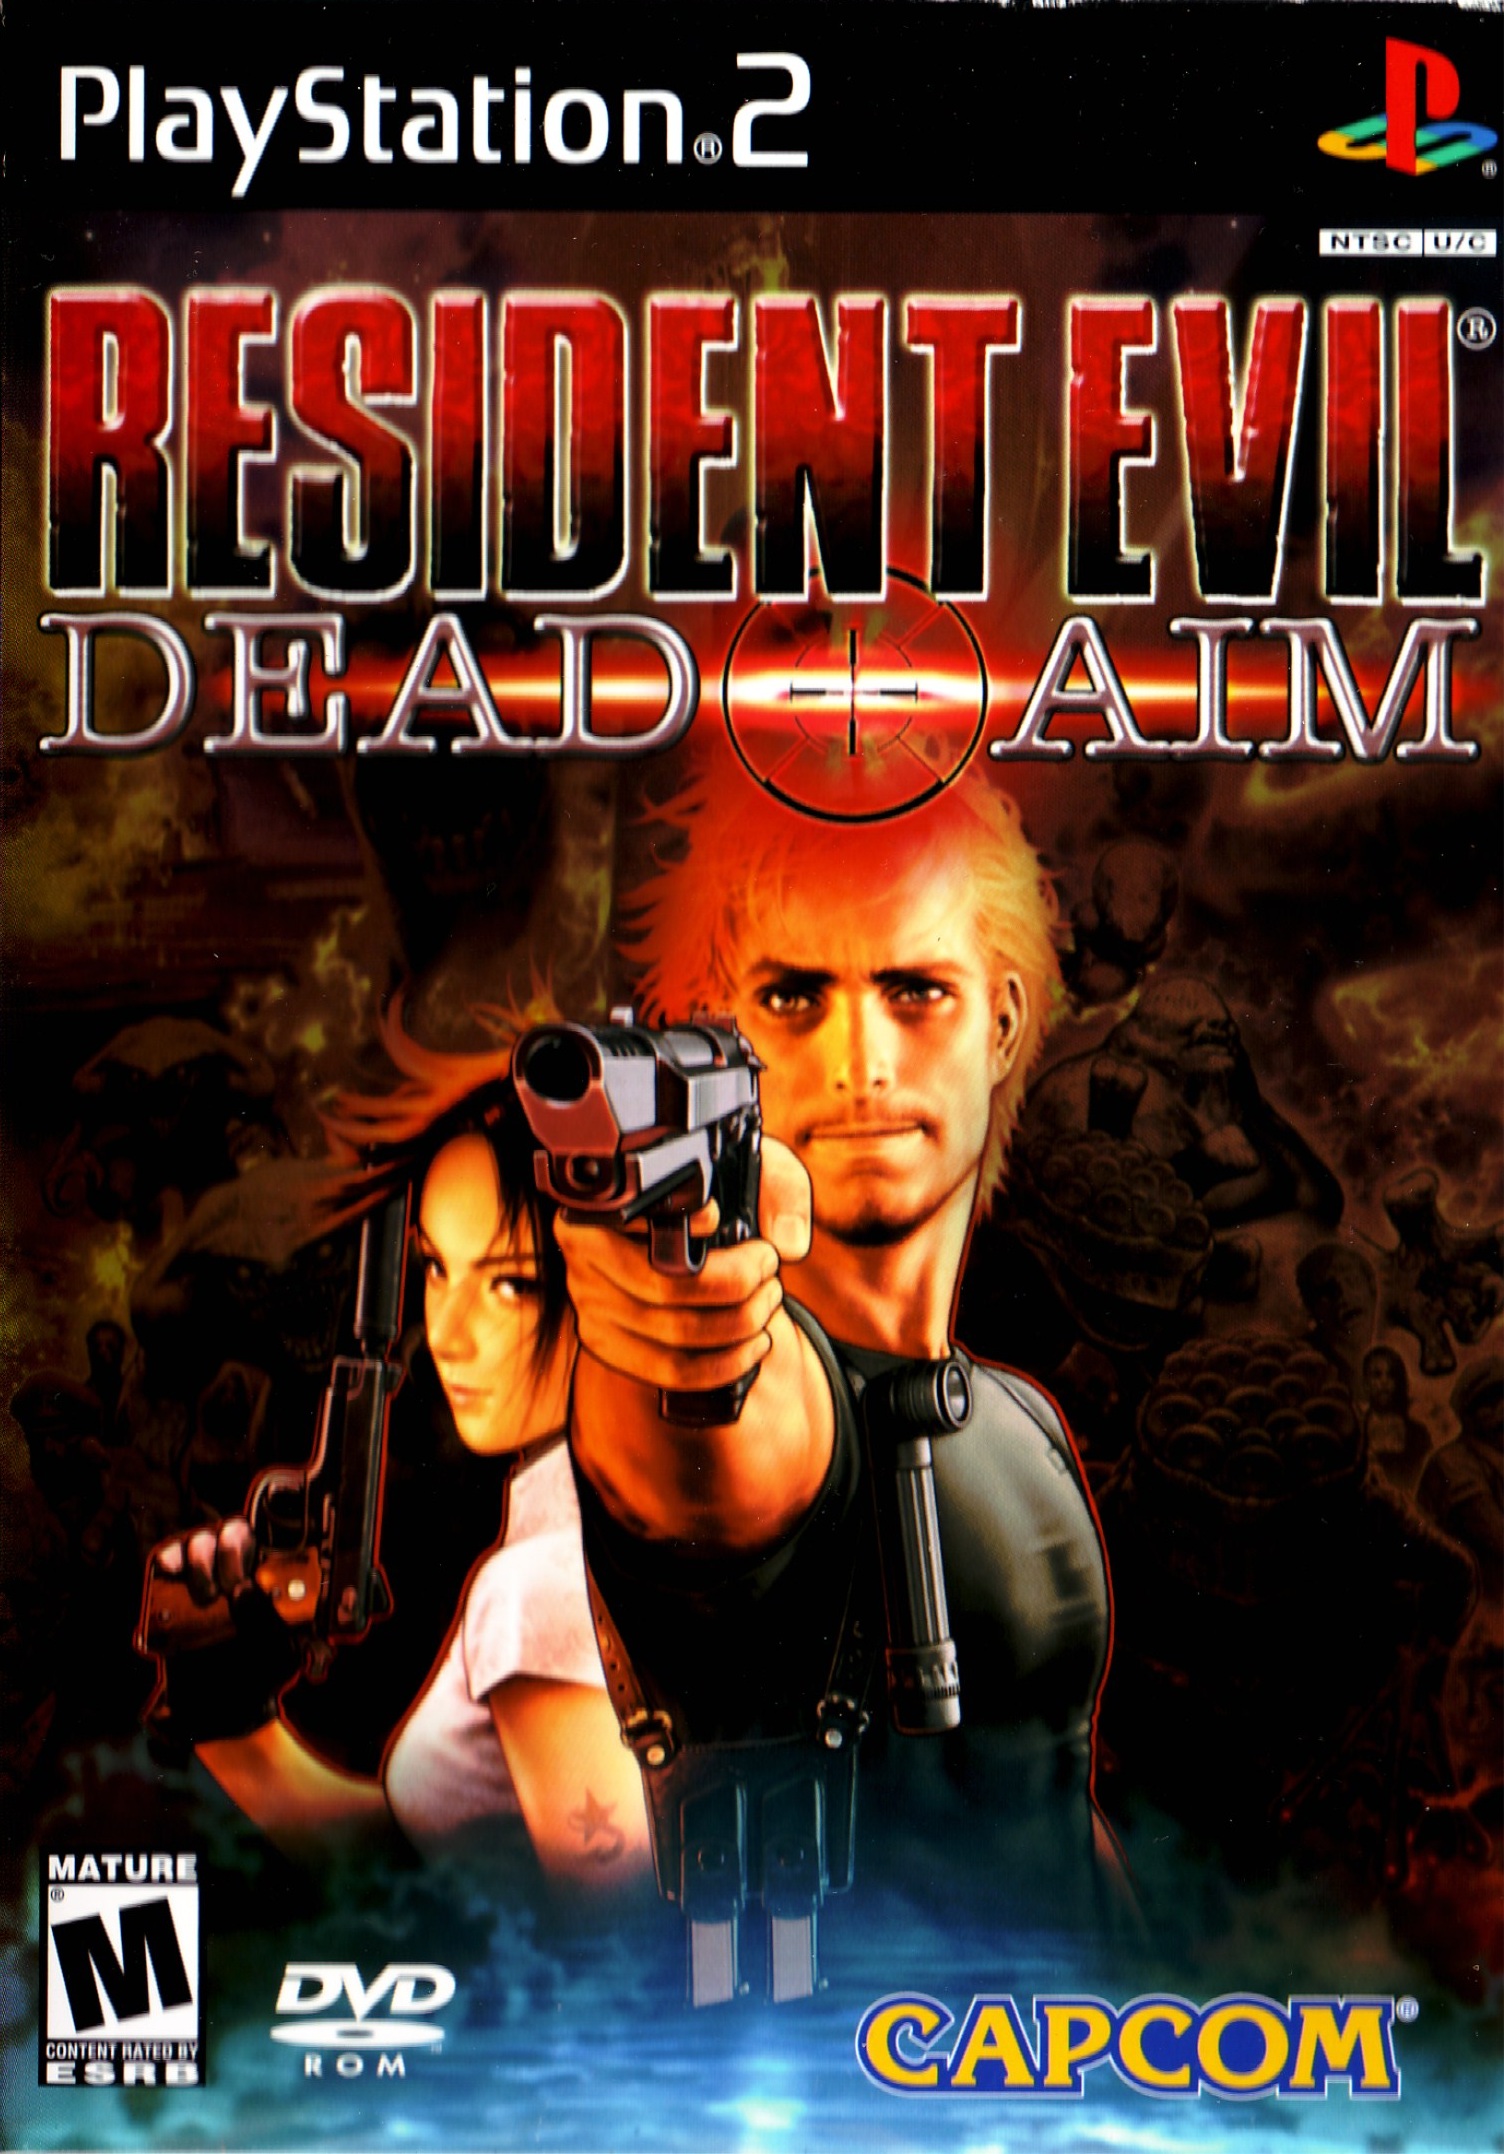 Resident Evil 5 e Dead Rising 2 saltam para o Steamworks